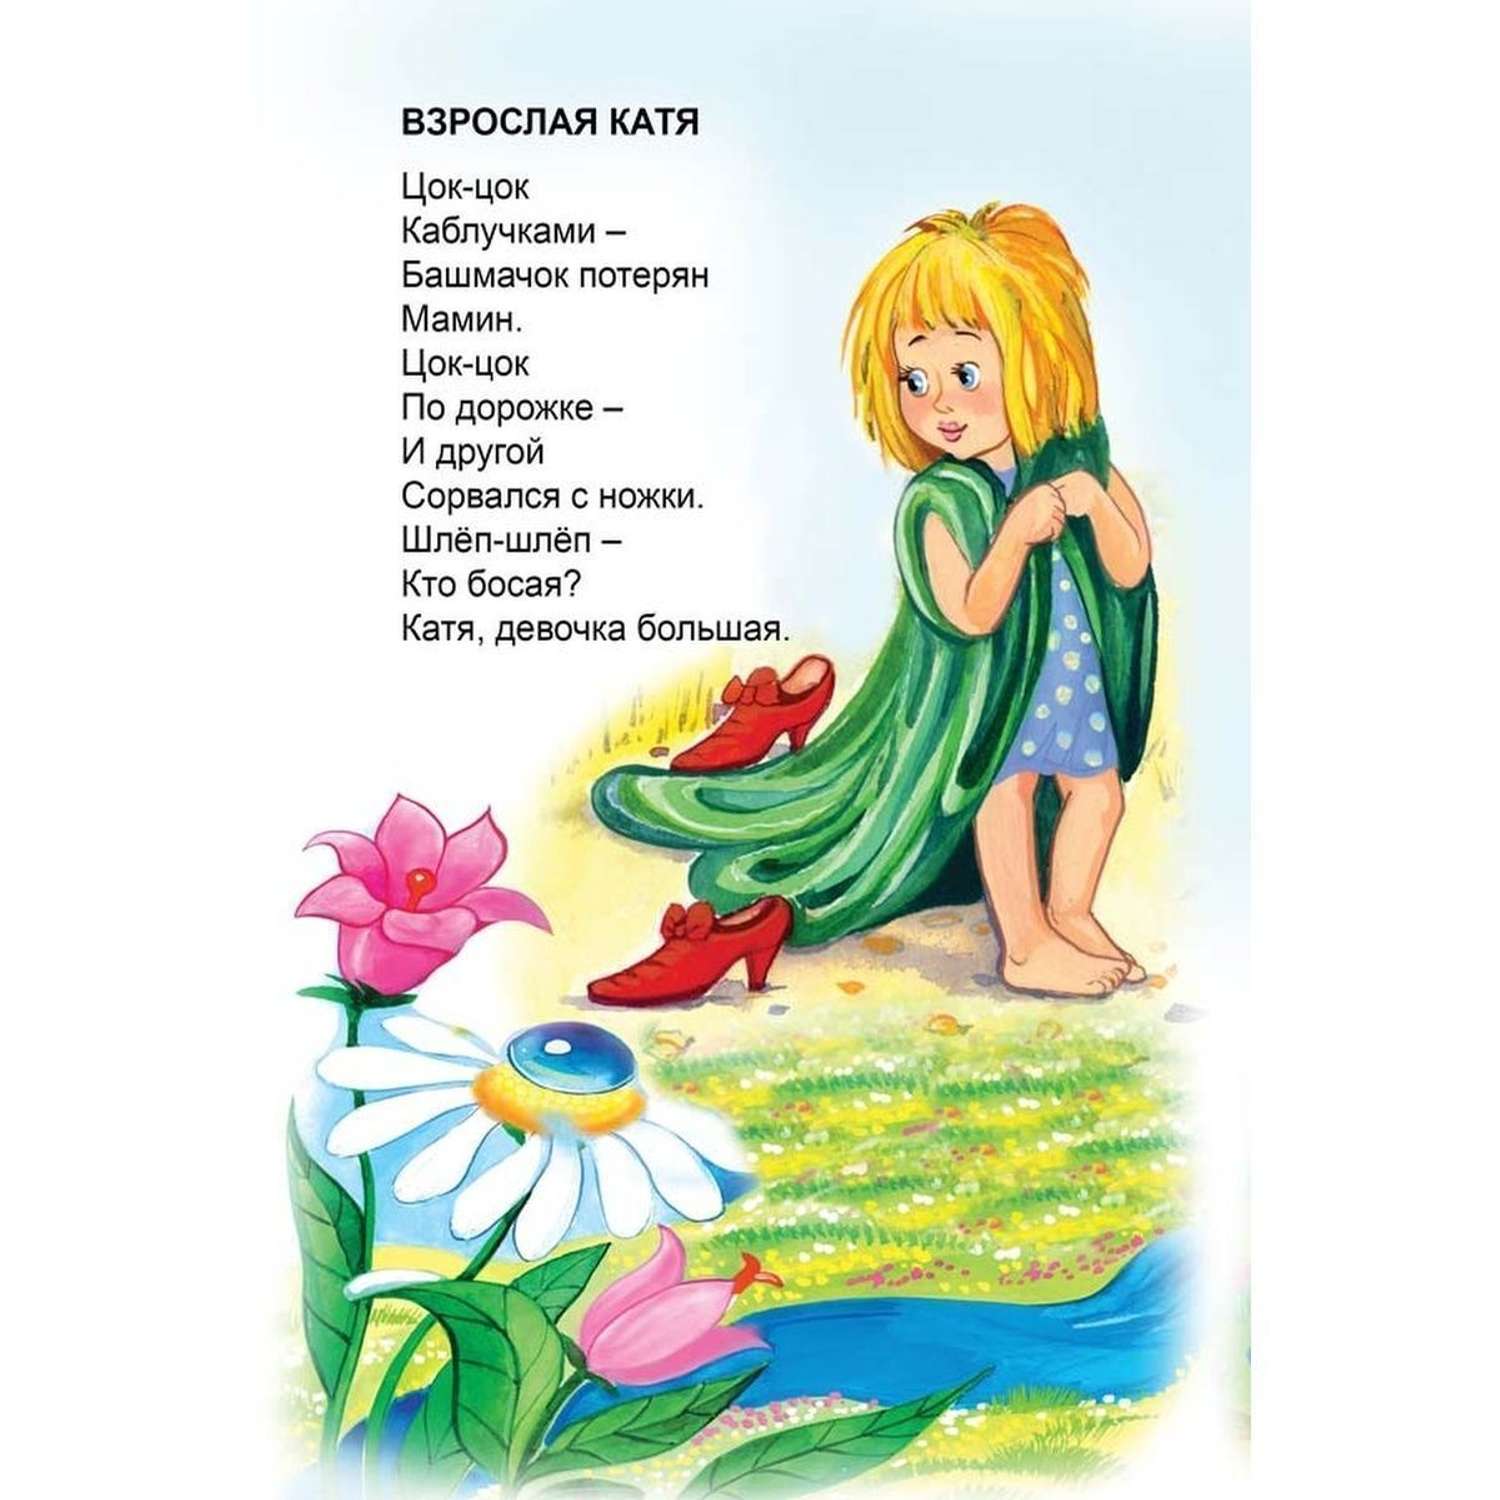 Набор книг Алтей стихи для малышей Детская площадка 5 шт. - фото 12